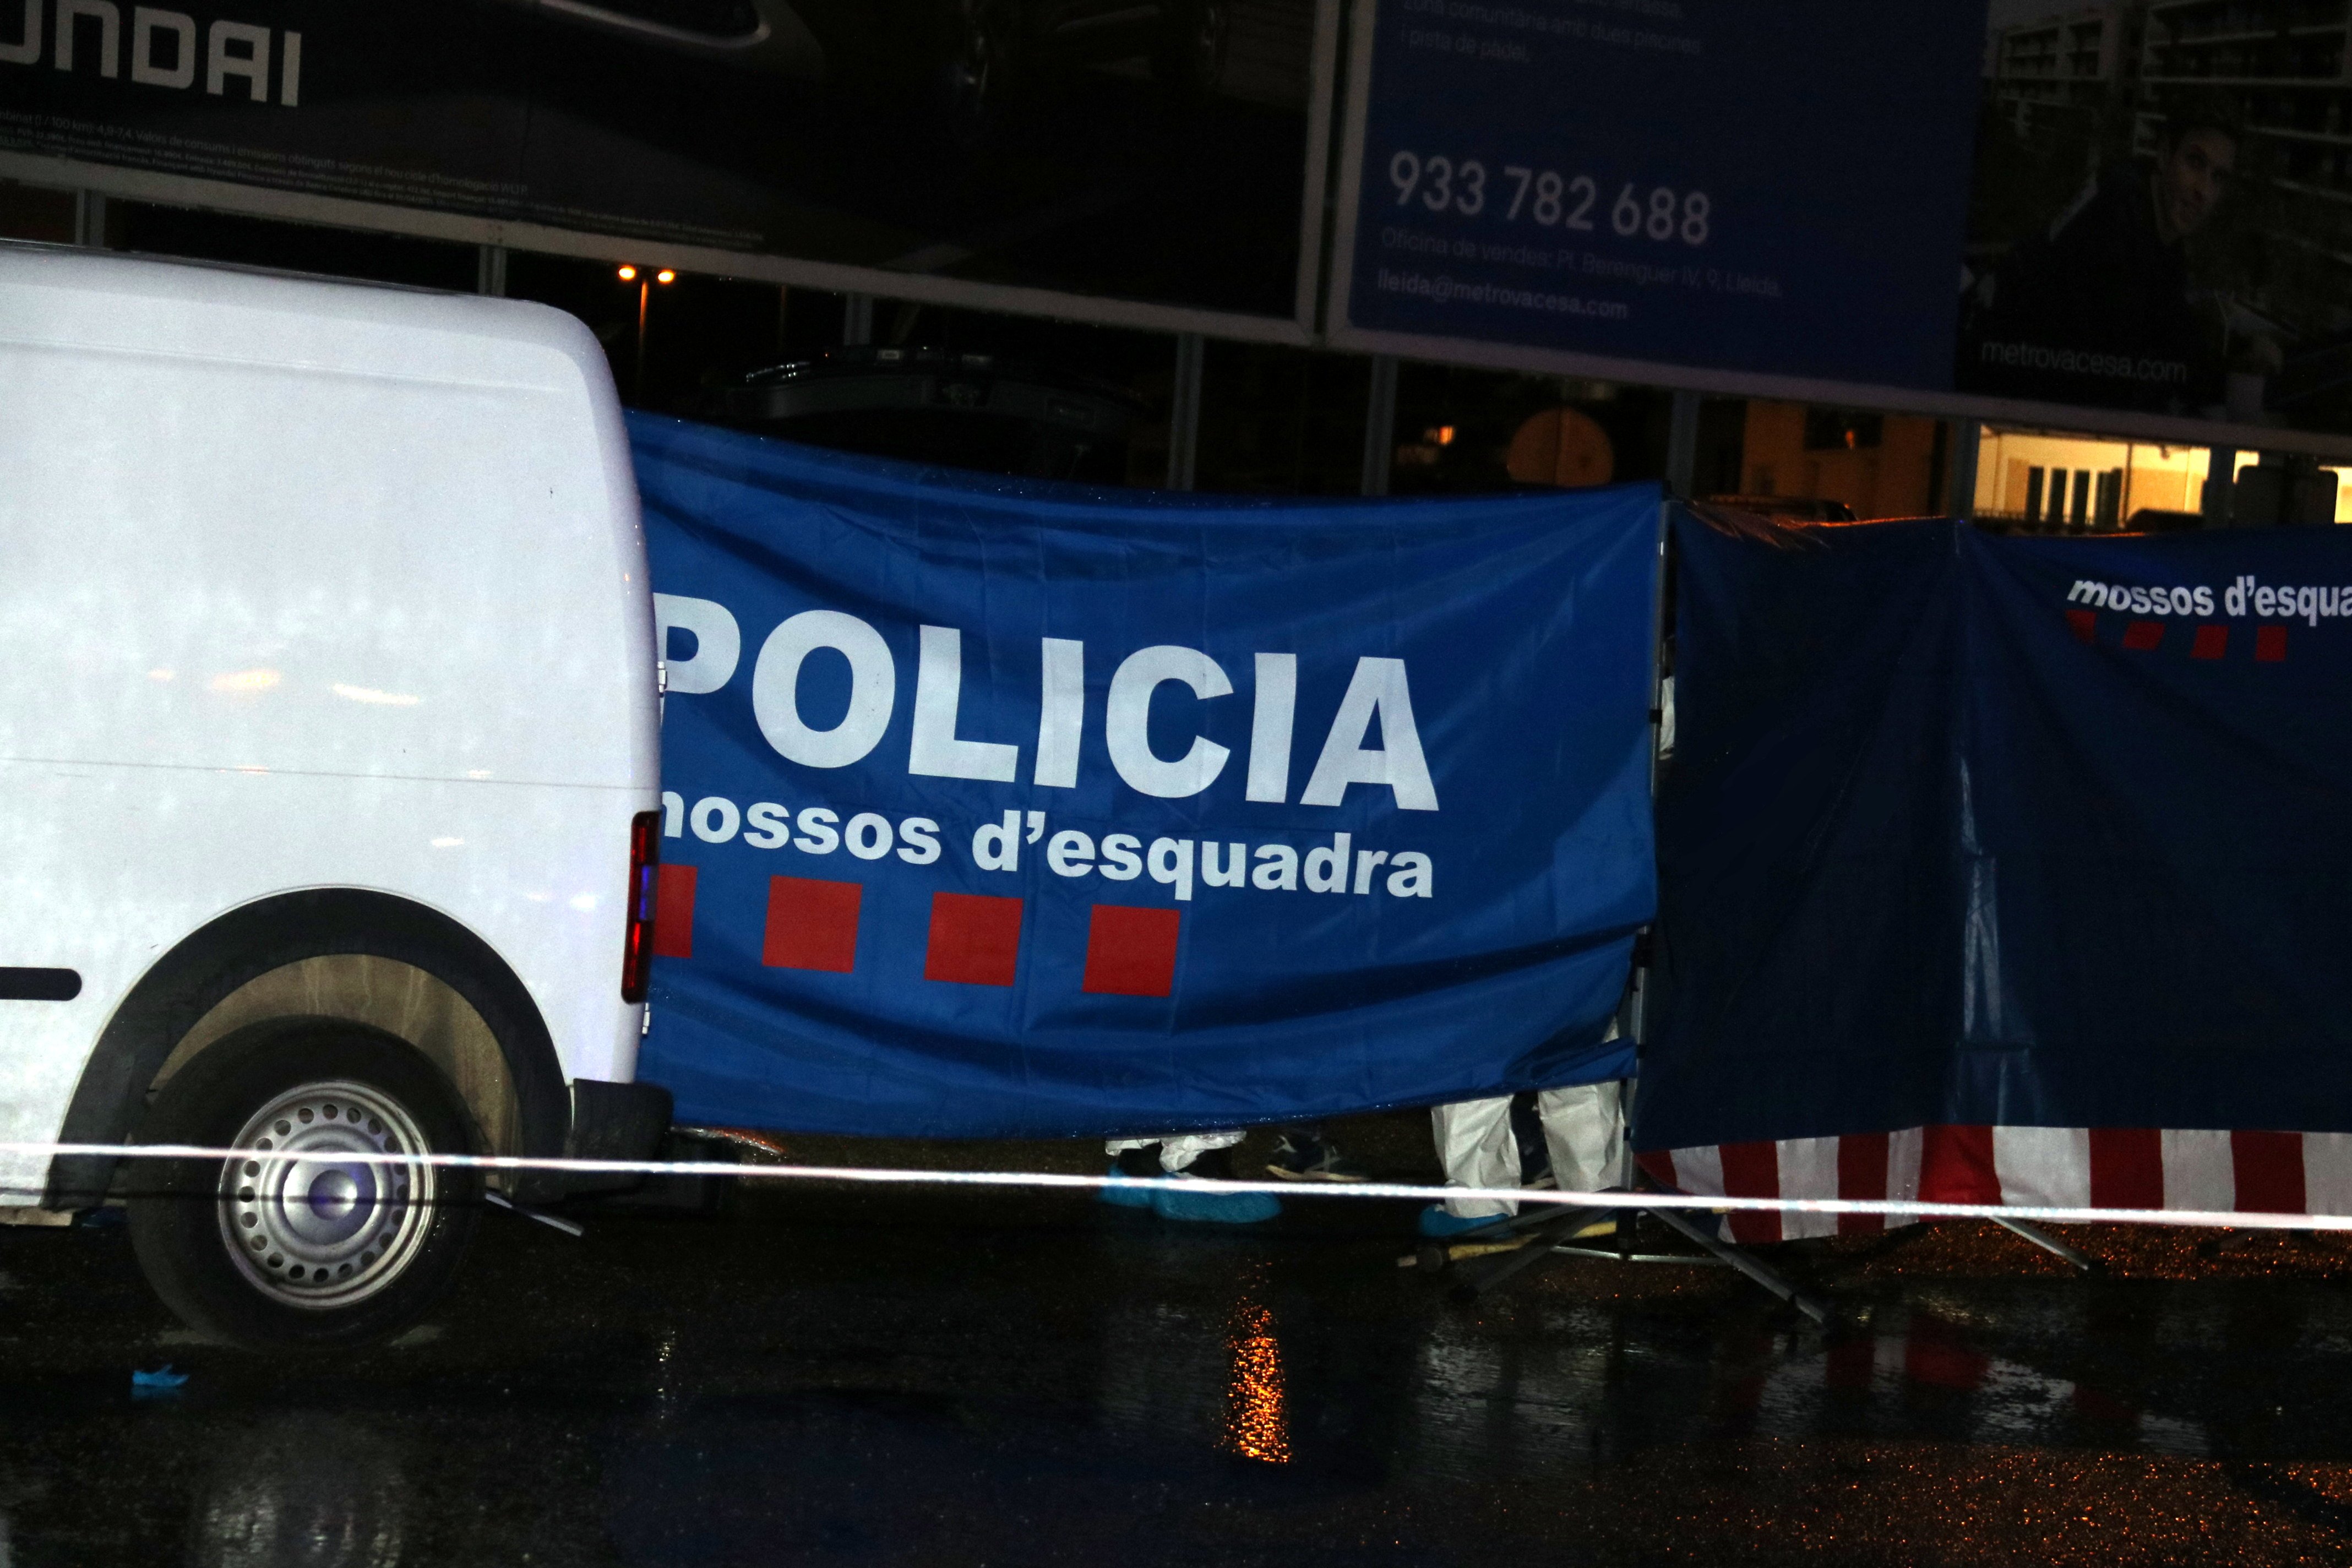 Policía Mossos / Lleida